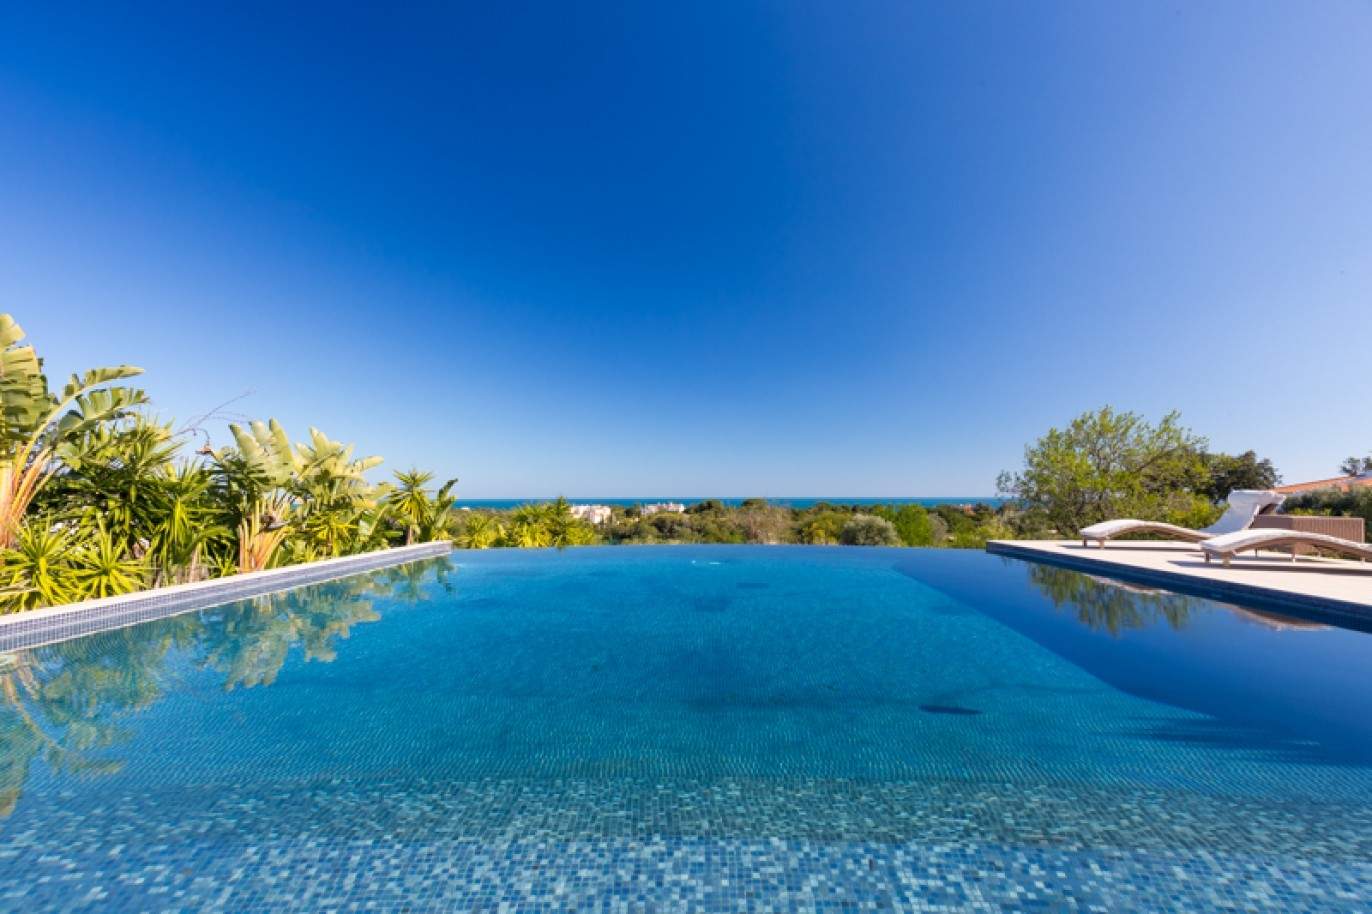 Moradia à venda, com vista mar, perto praia e golfe, Algarve, Portugal_76406